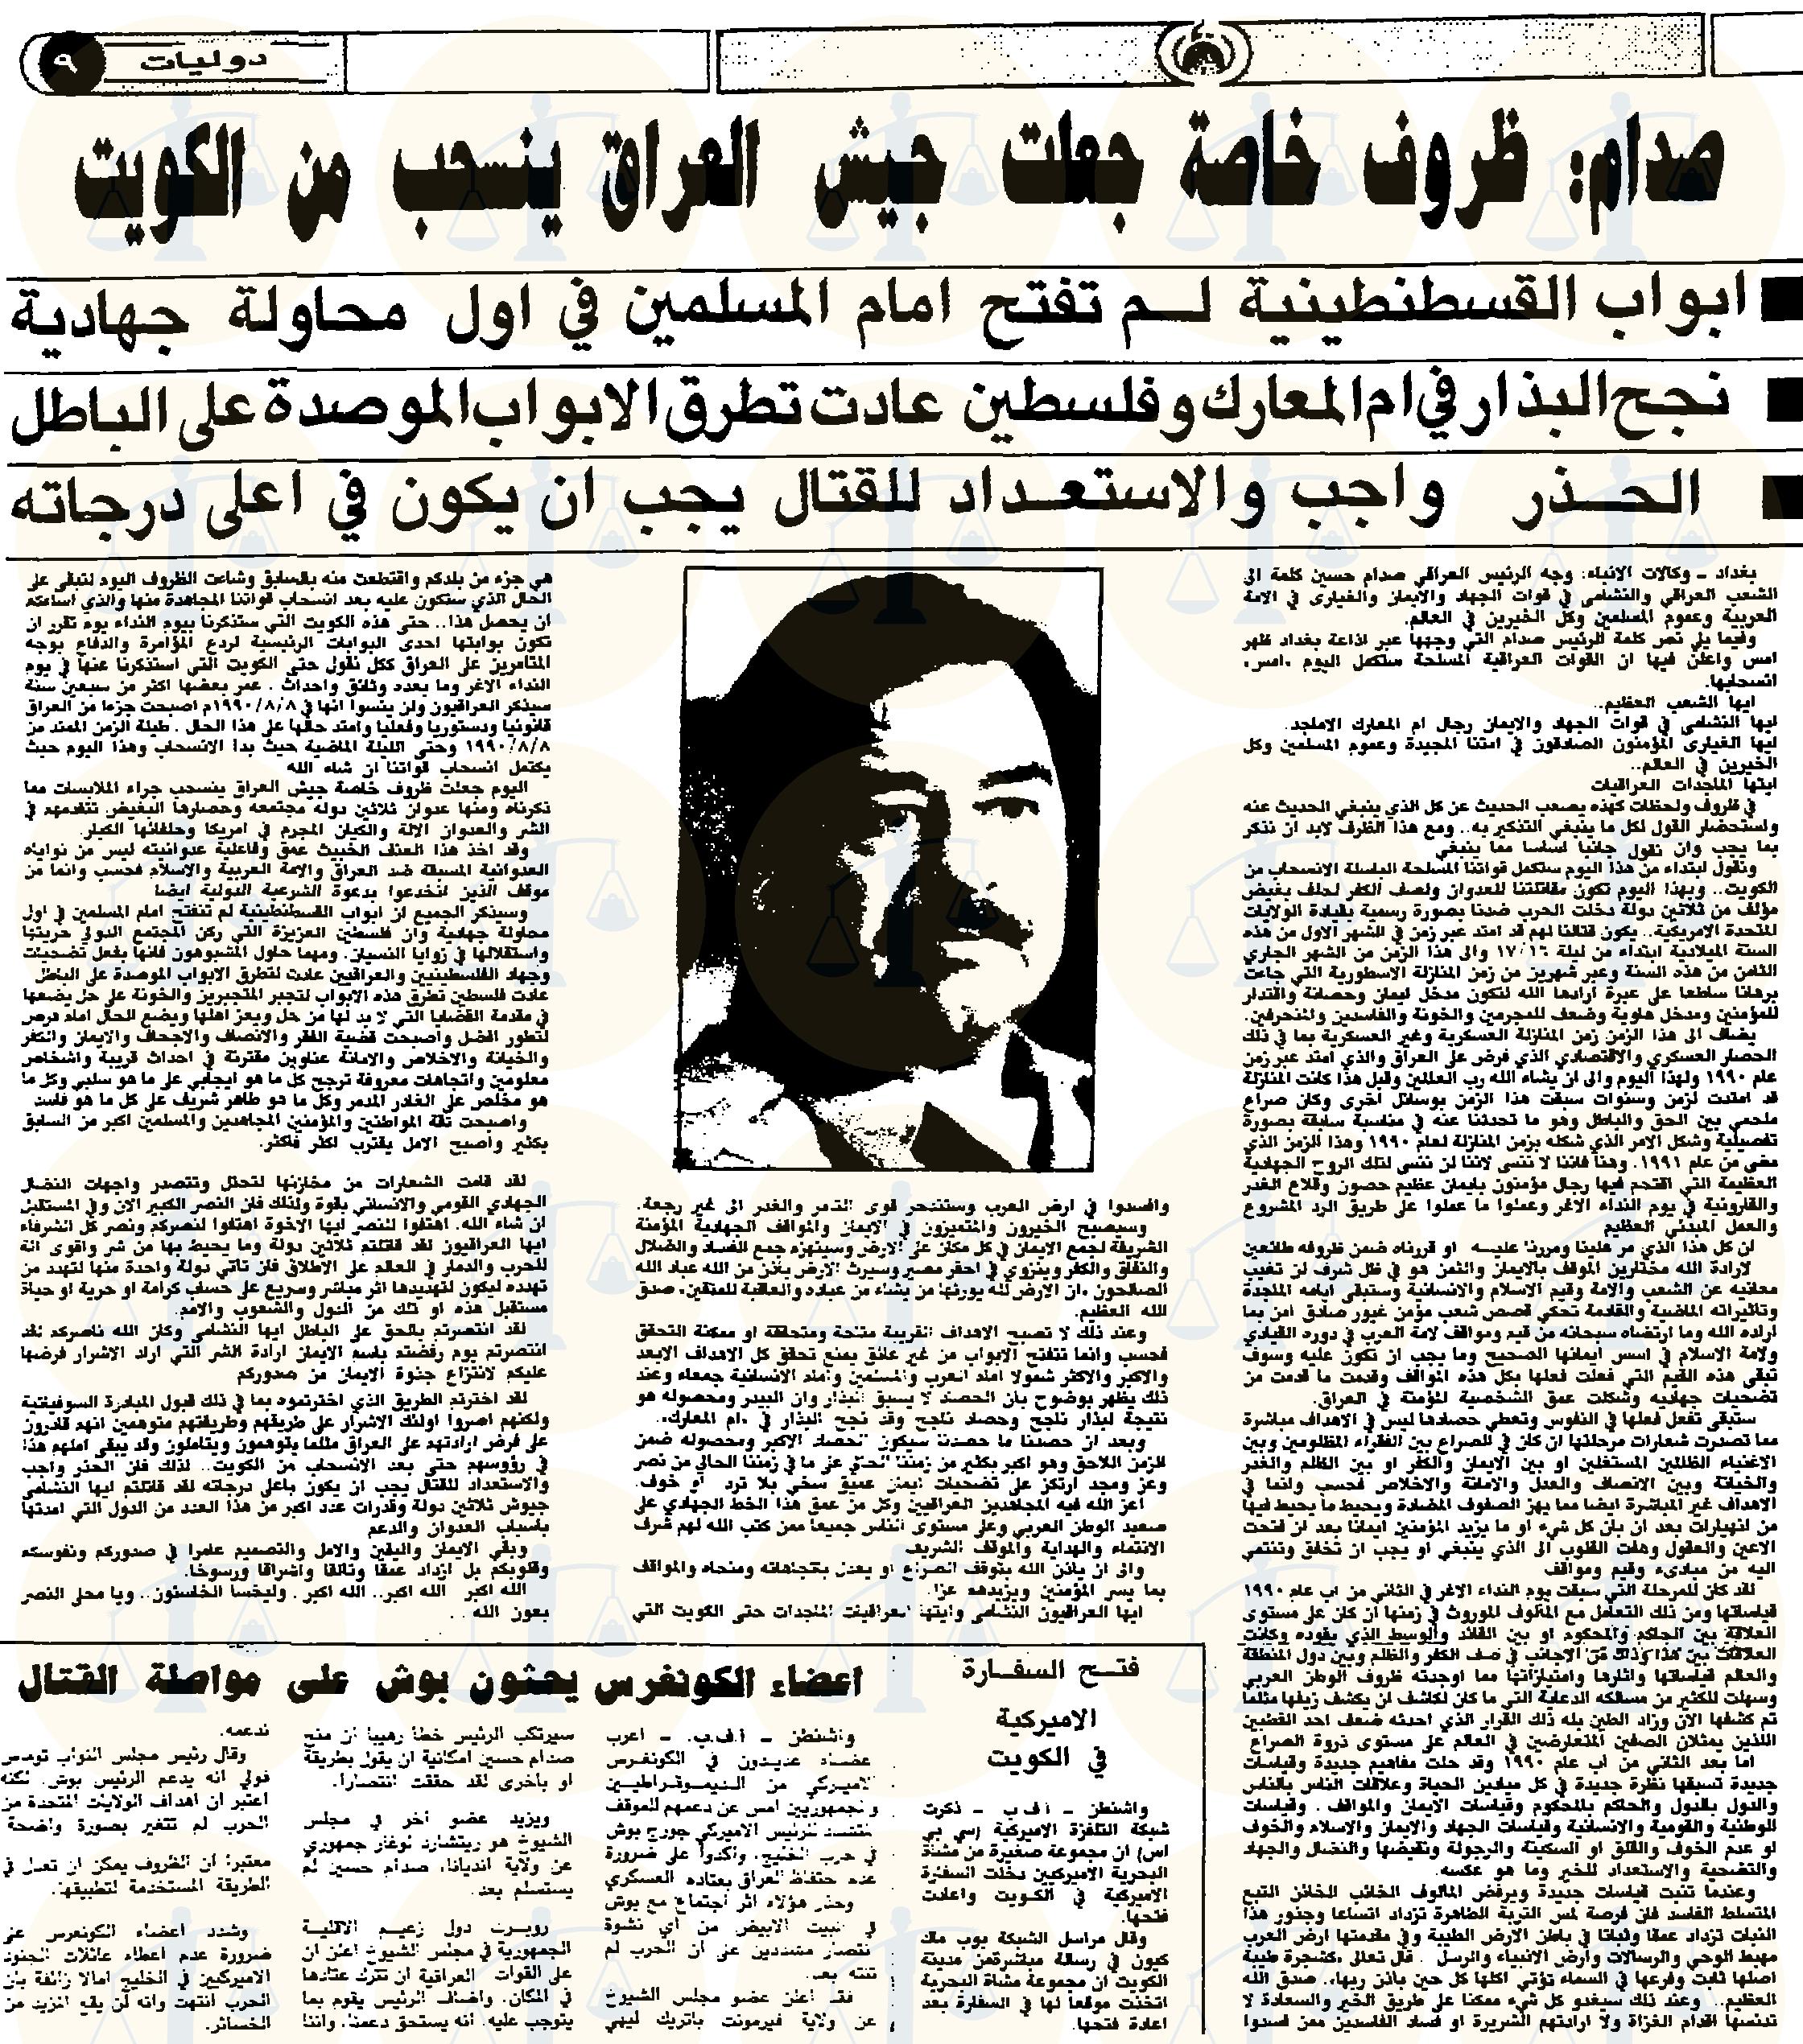 خطاب صدام حسين بعد إعلان انسحاب جيشه من الكويت، جريدة الدستور الأردنية، 27 فبراير 1991م، ص9